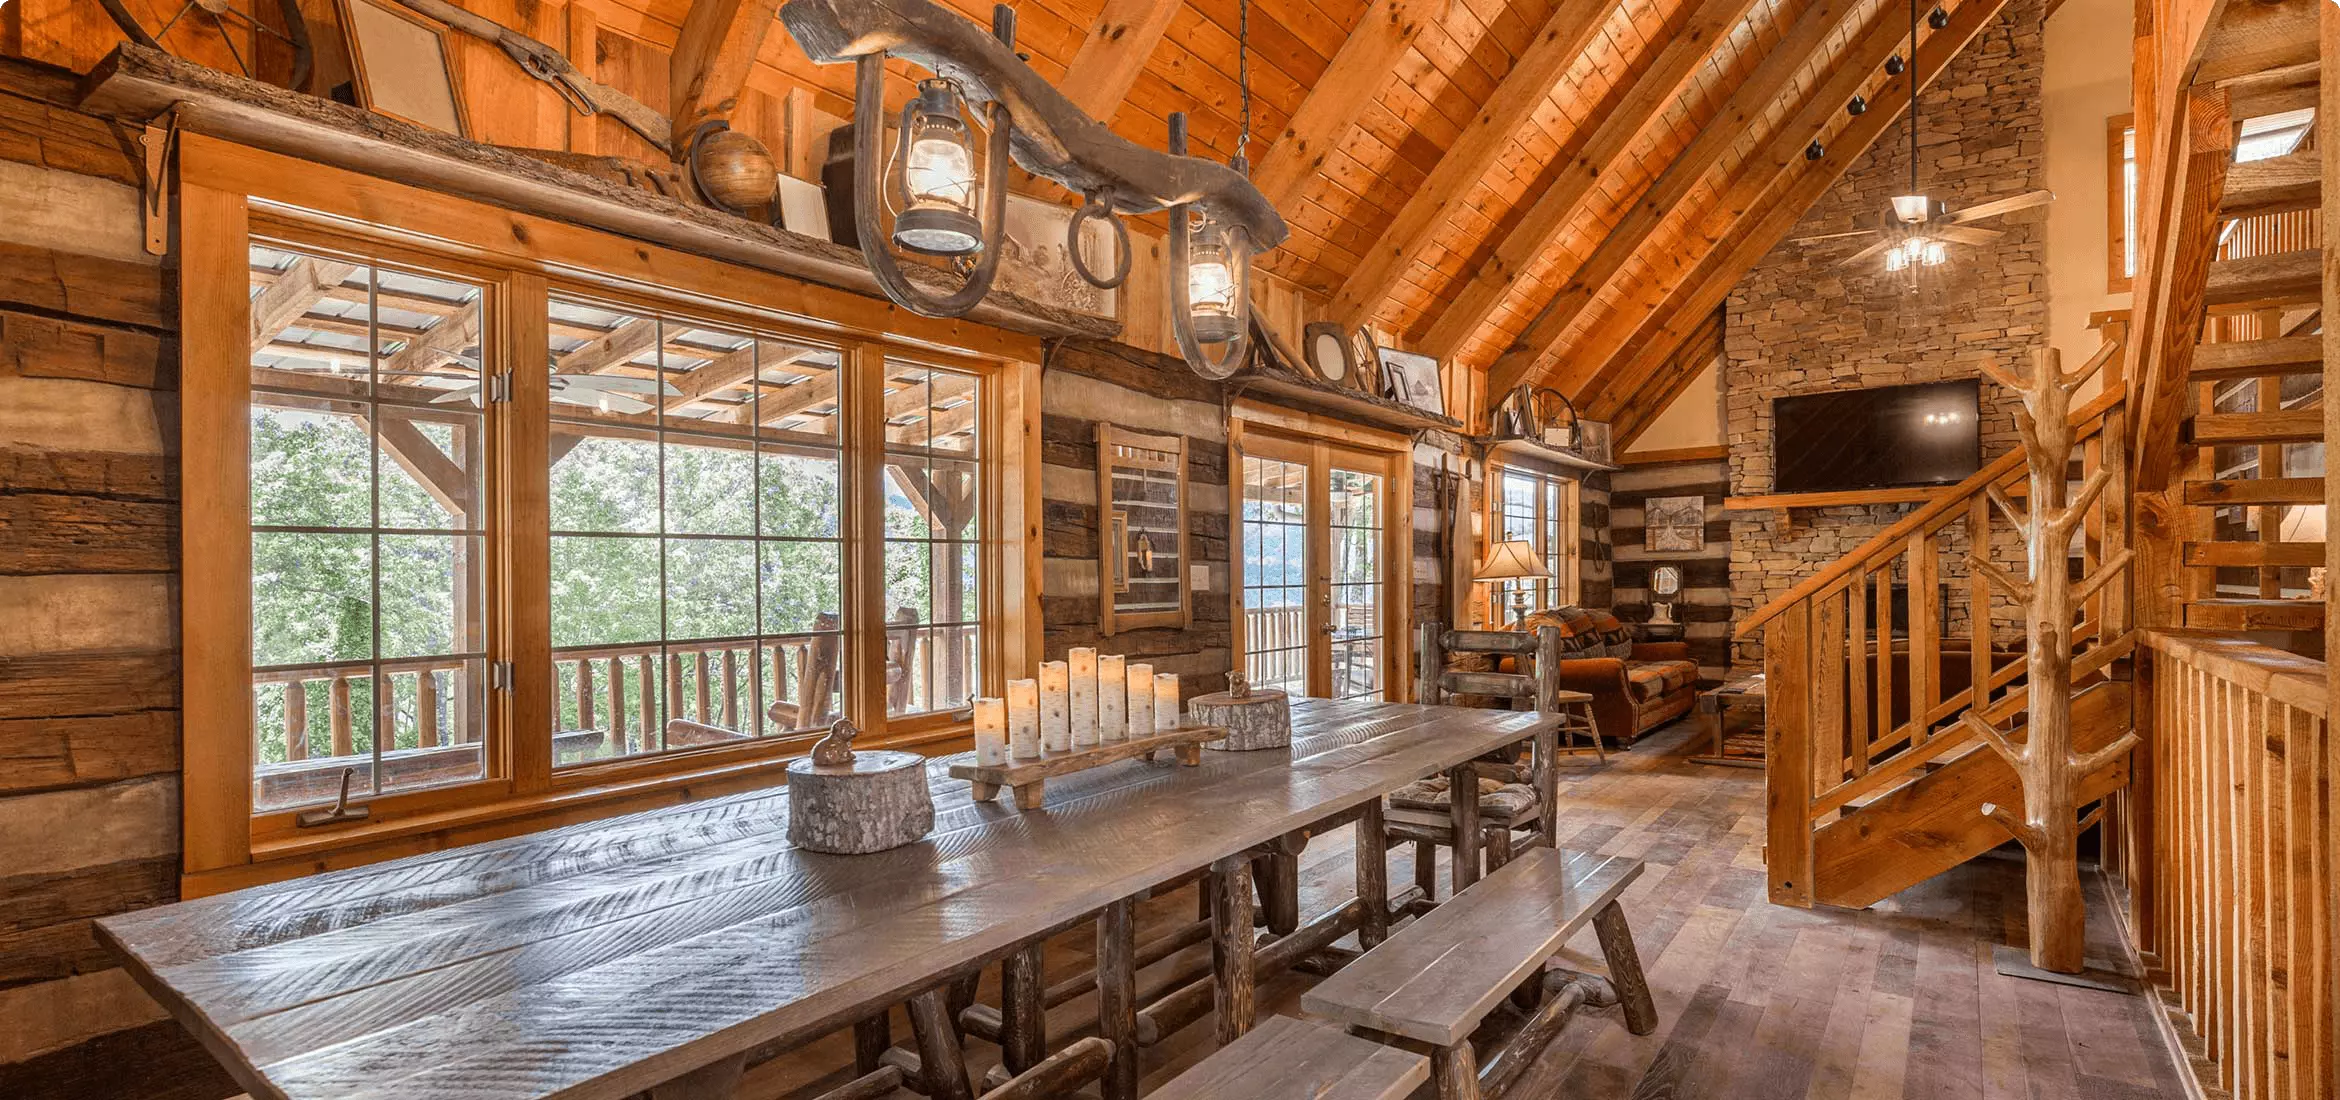 interior of Smoky Mountain cabin